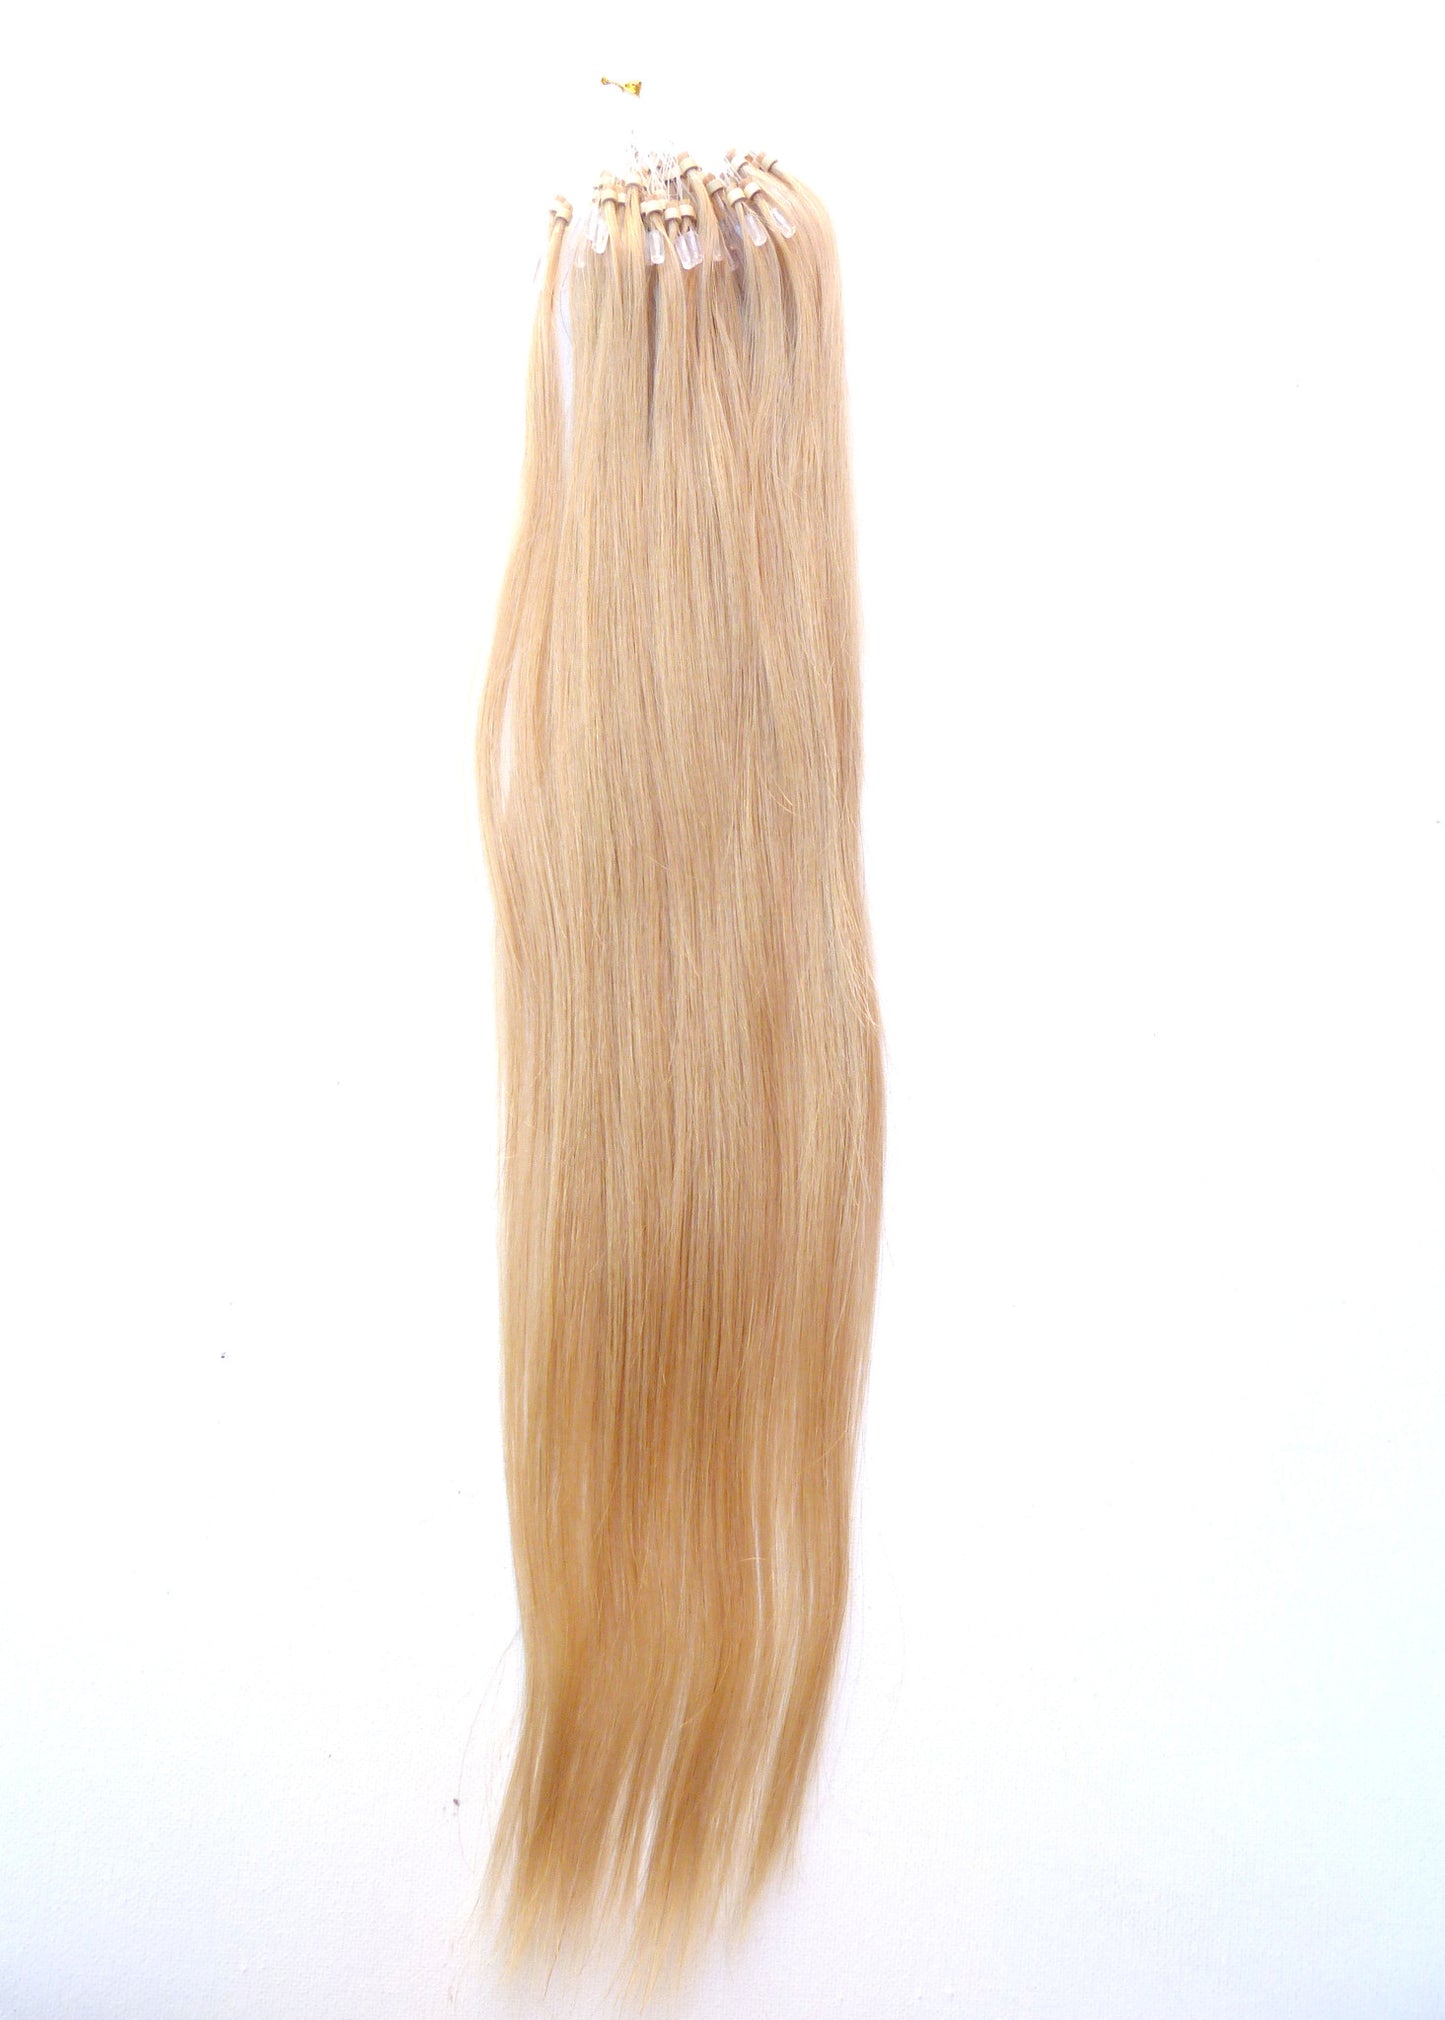 Extensions de cheveux humains vierges européens - extensions à micro-boucles - cheveux vierges et beauté, les meilleures extensions de cheveux, de vrais cheveux humains vierges.